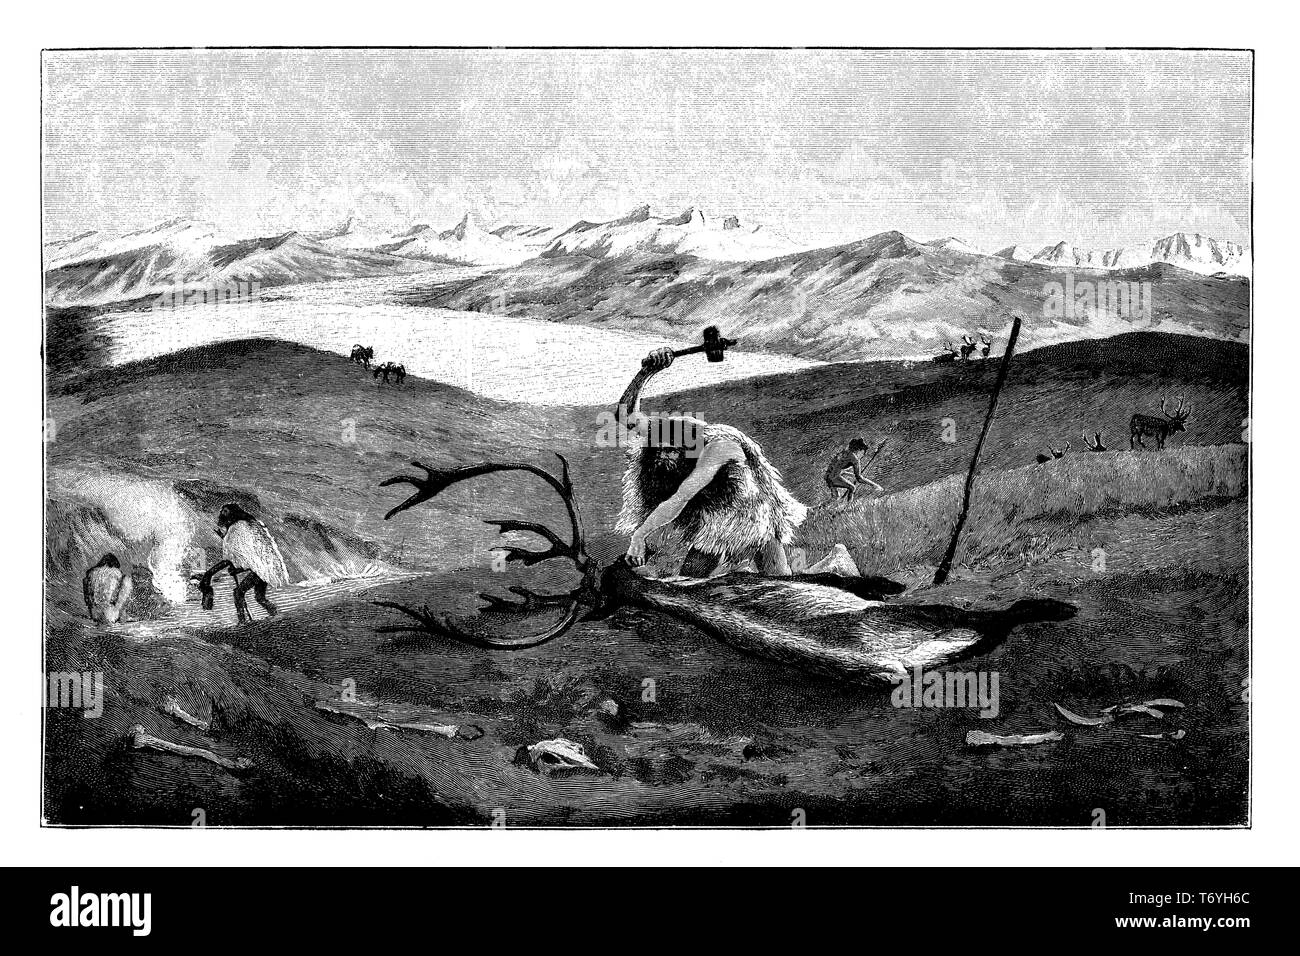 La chasse au renne sauvage dans le paysage de moraine Haute Souabe au cours du dernier âge glaciaire. D'après une peinture par W. Kranz, 1902 Banque D'Images